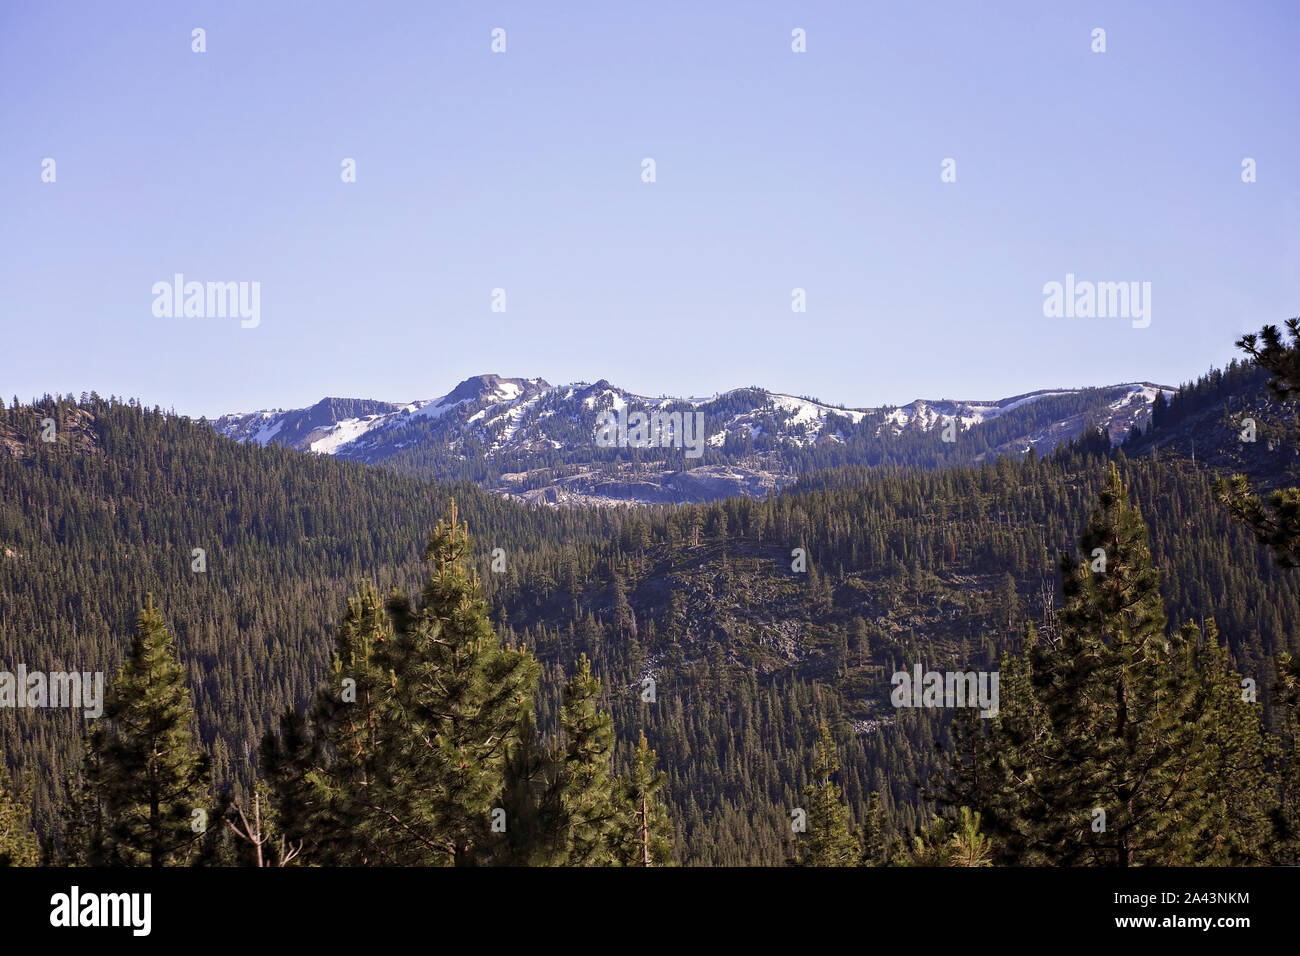 Des sommets enneigés de la Sierra Nevada, entouré de pins avec fond de ciel bleu clair, tiré de South Lake Tahoe, en Californie Banque D'Images